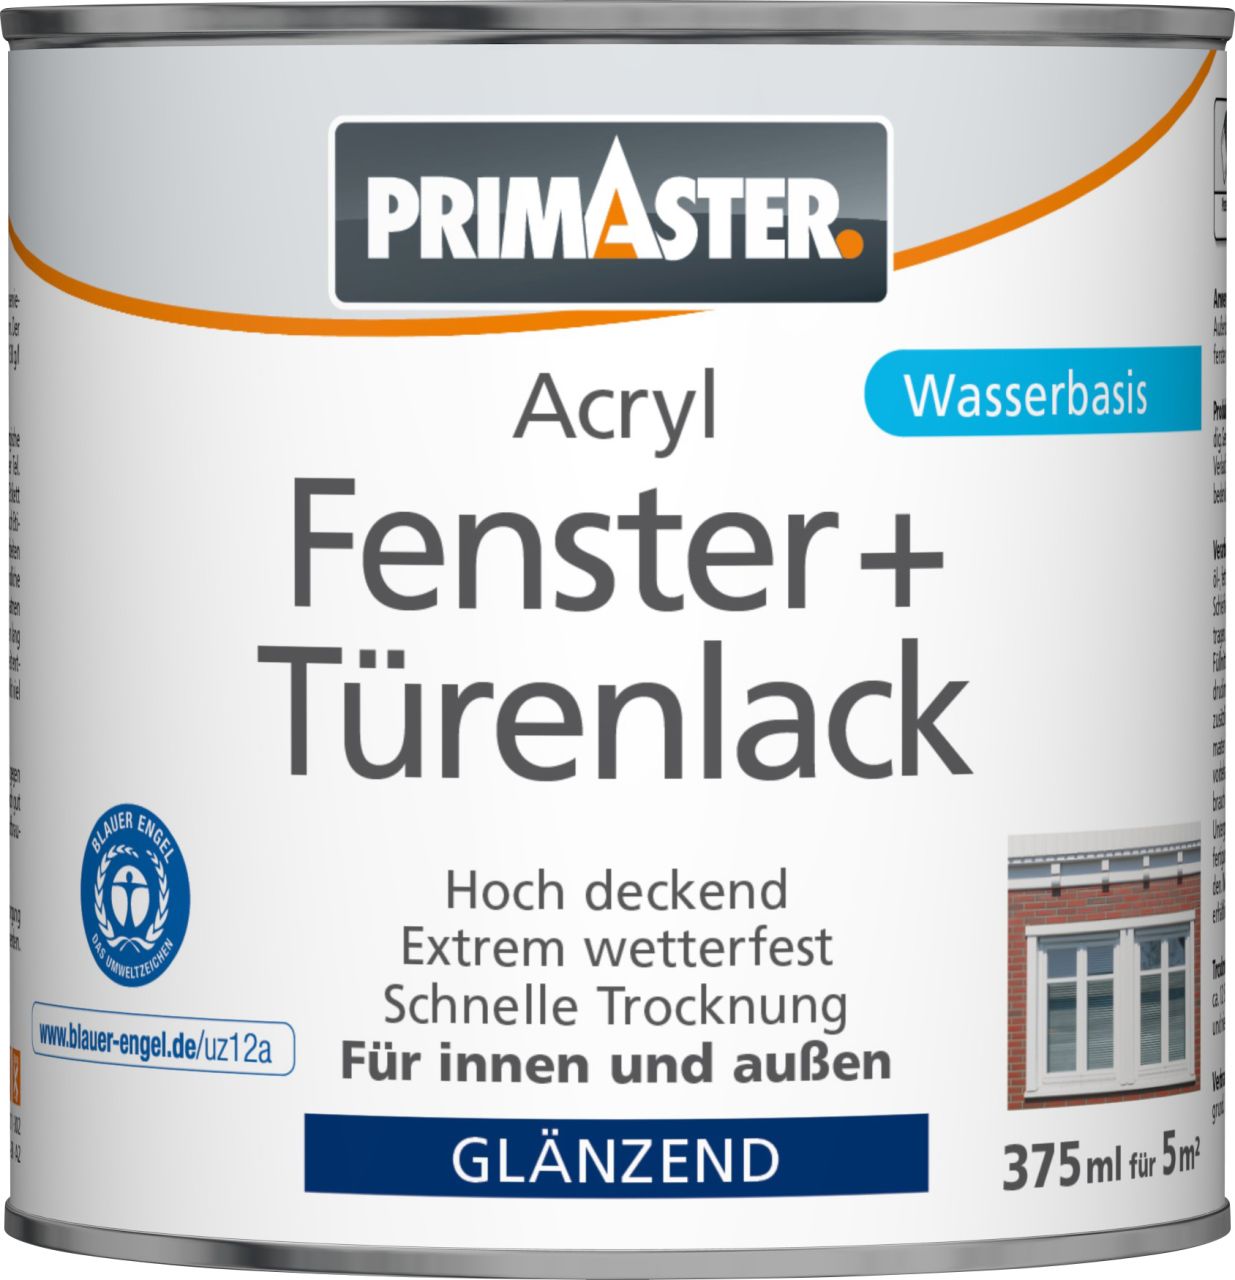 Primaster Acryl Fenster- und Türenlack 375 ml weiß glänzend von Primaster